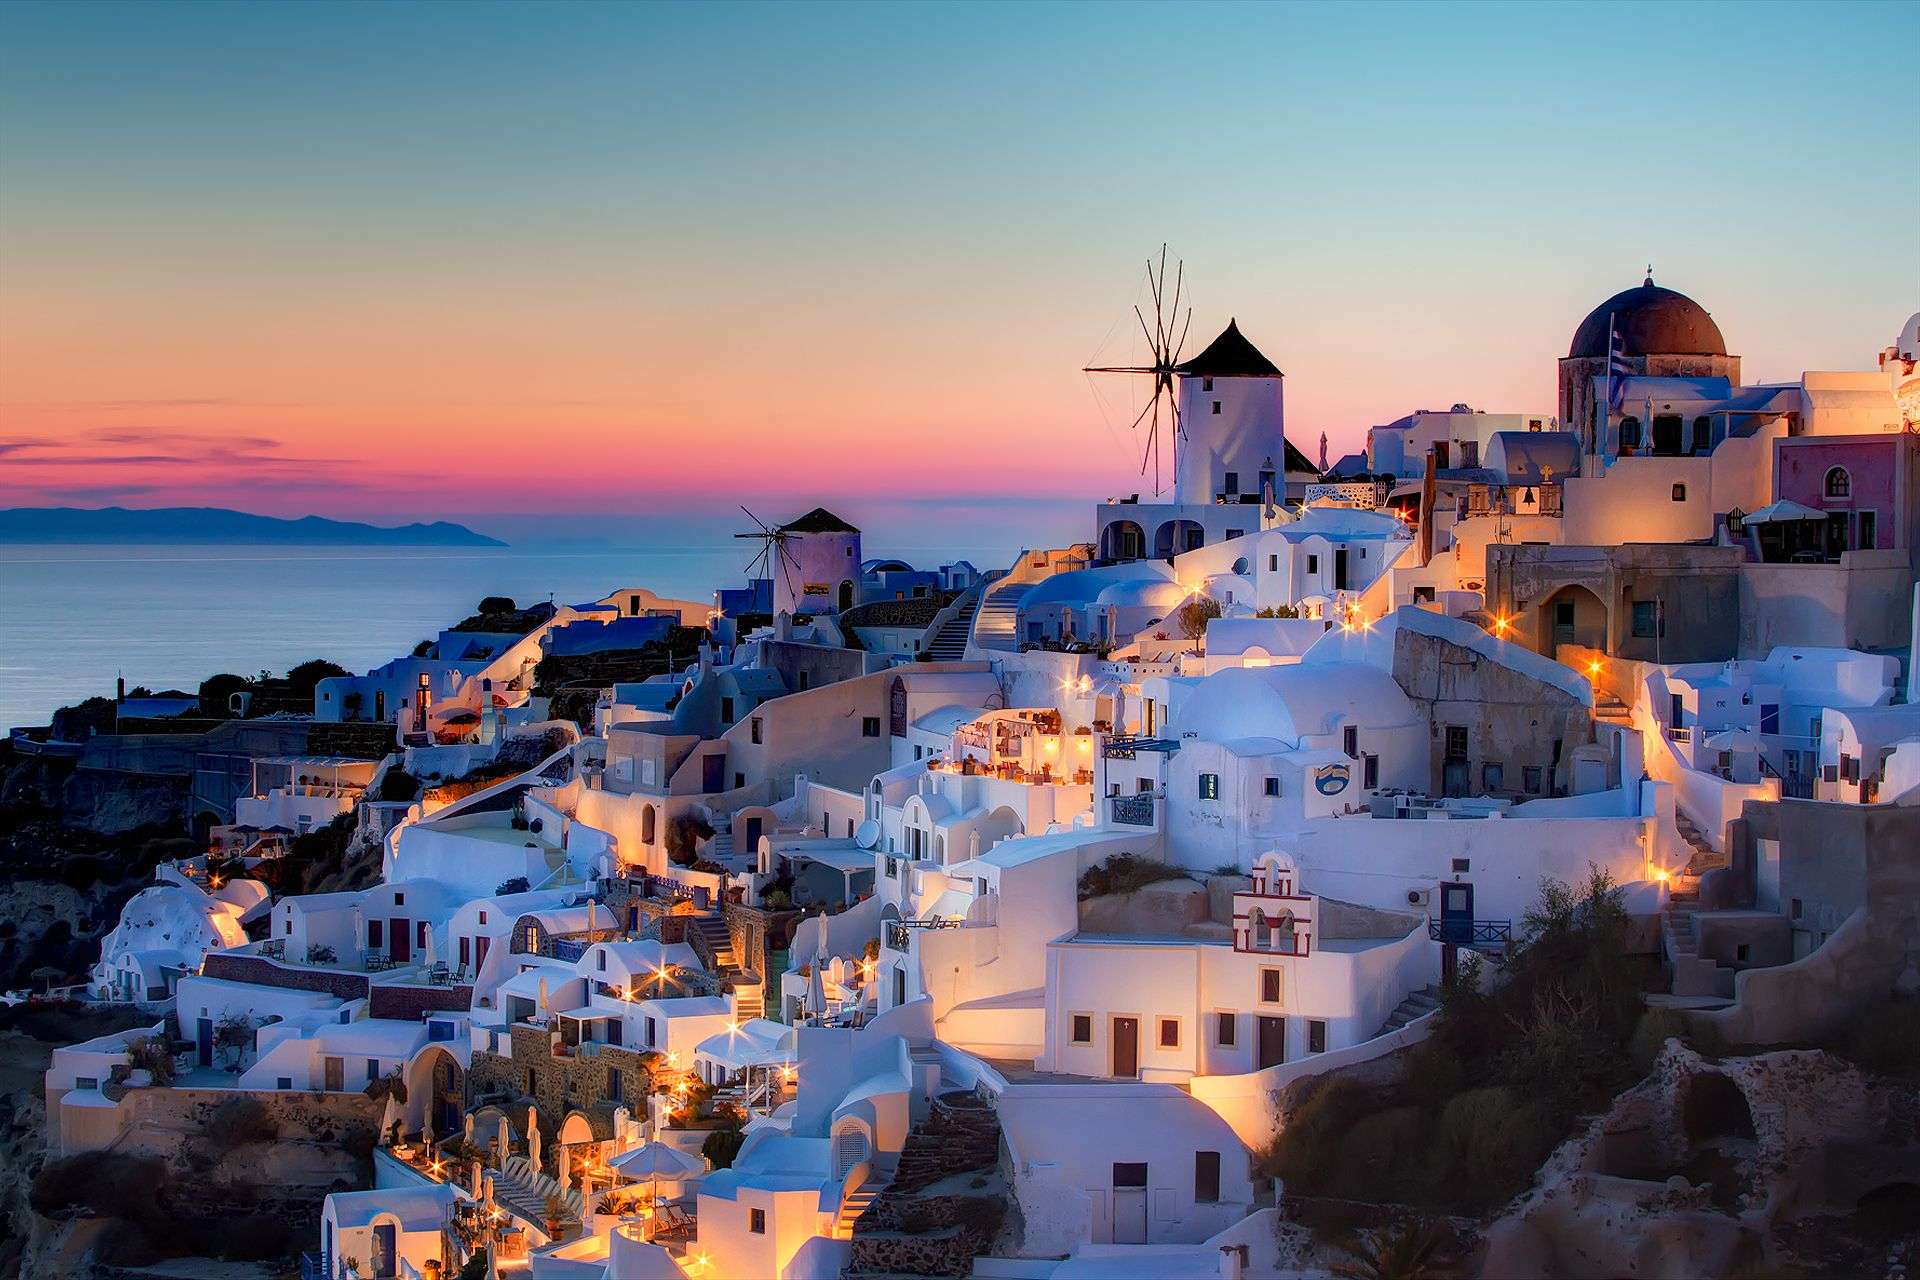 Hình nền Windows 10 Hy Lạp - Thức dậy vào mỗi buổi sáng với tinh thần sảng khoái với hình nền đẹp như mơ trên máy tính của bạn. Hình ảnh đầy sức sống của những ngôi nhà truyền thống Hy Lạp sẽ tạo ra một không gian làm việc đầy sức sống và sáng tạo.